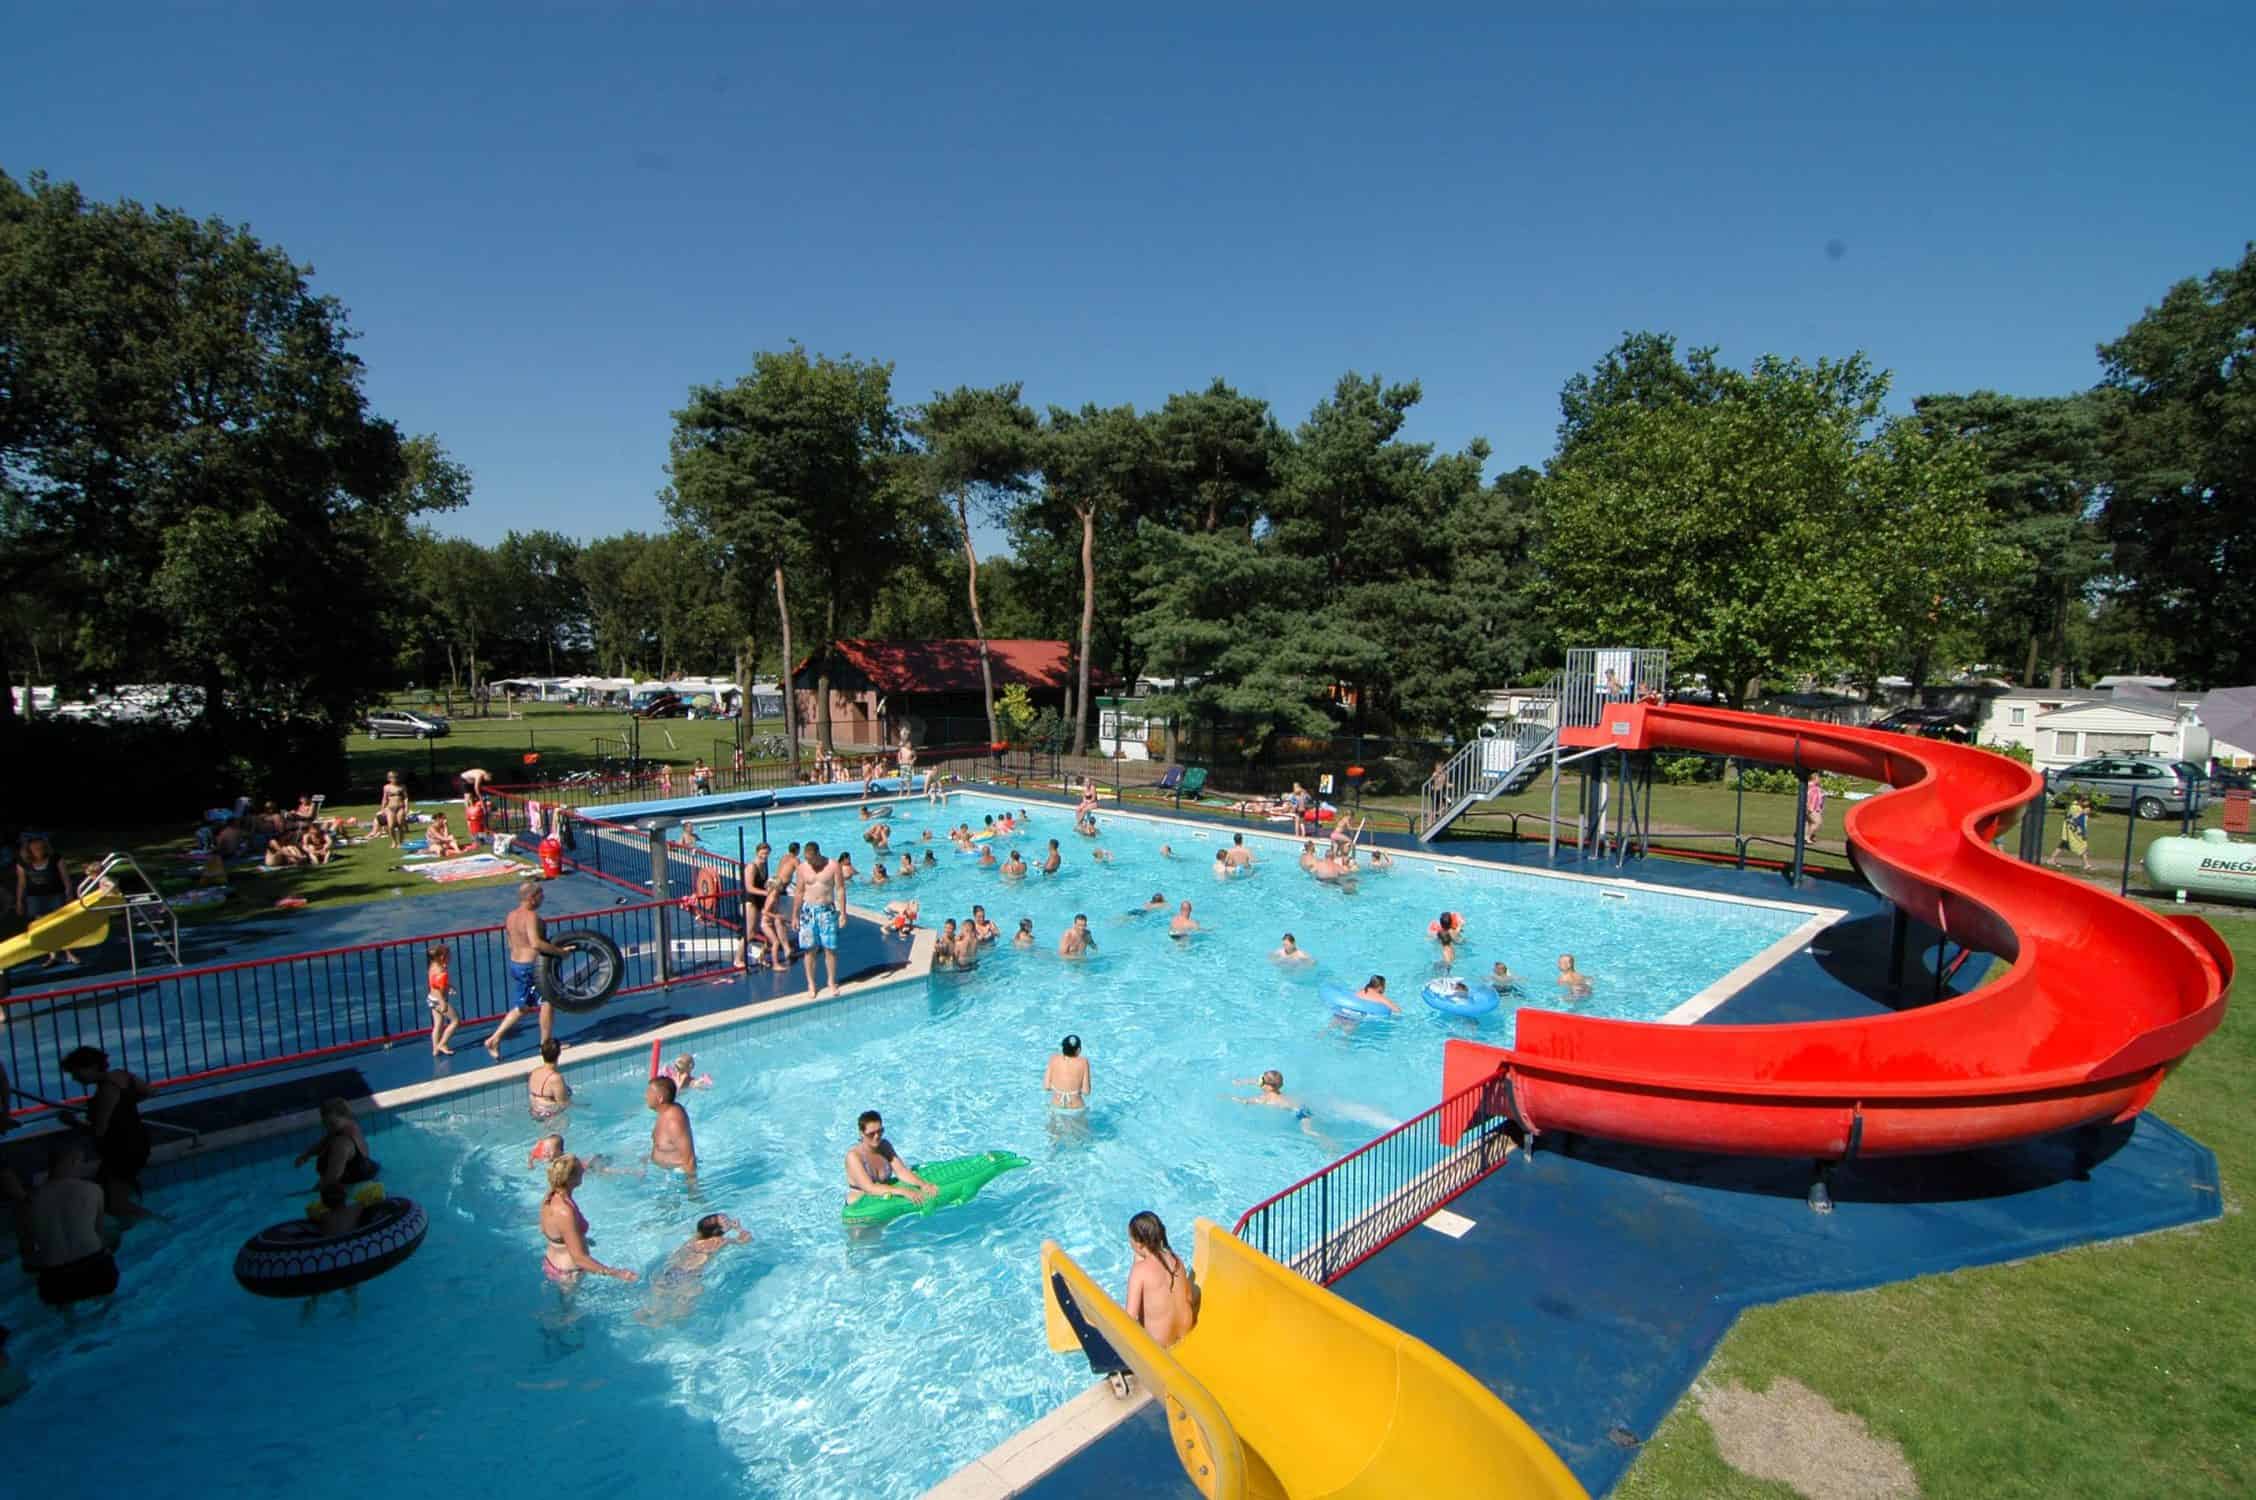 Buitenzwembad in Limburg voor jong en oud: Beringerzand in Panningen